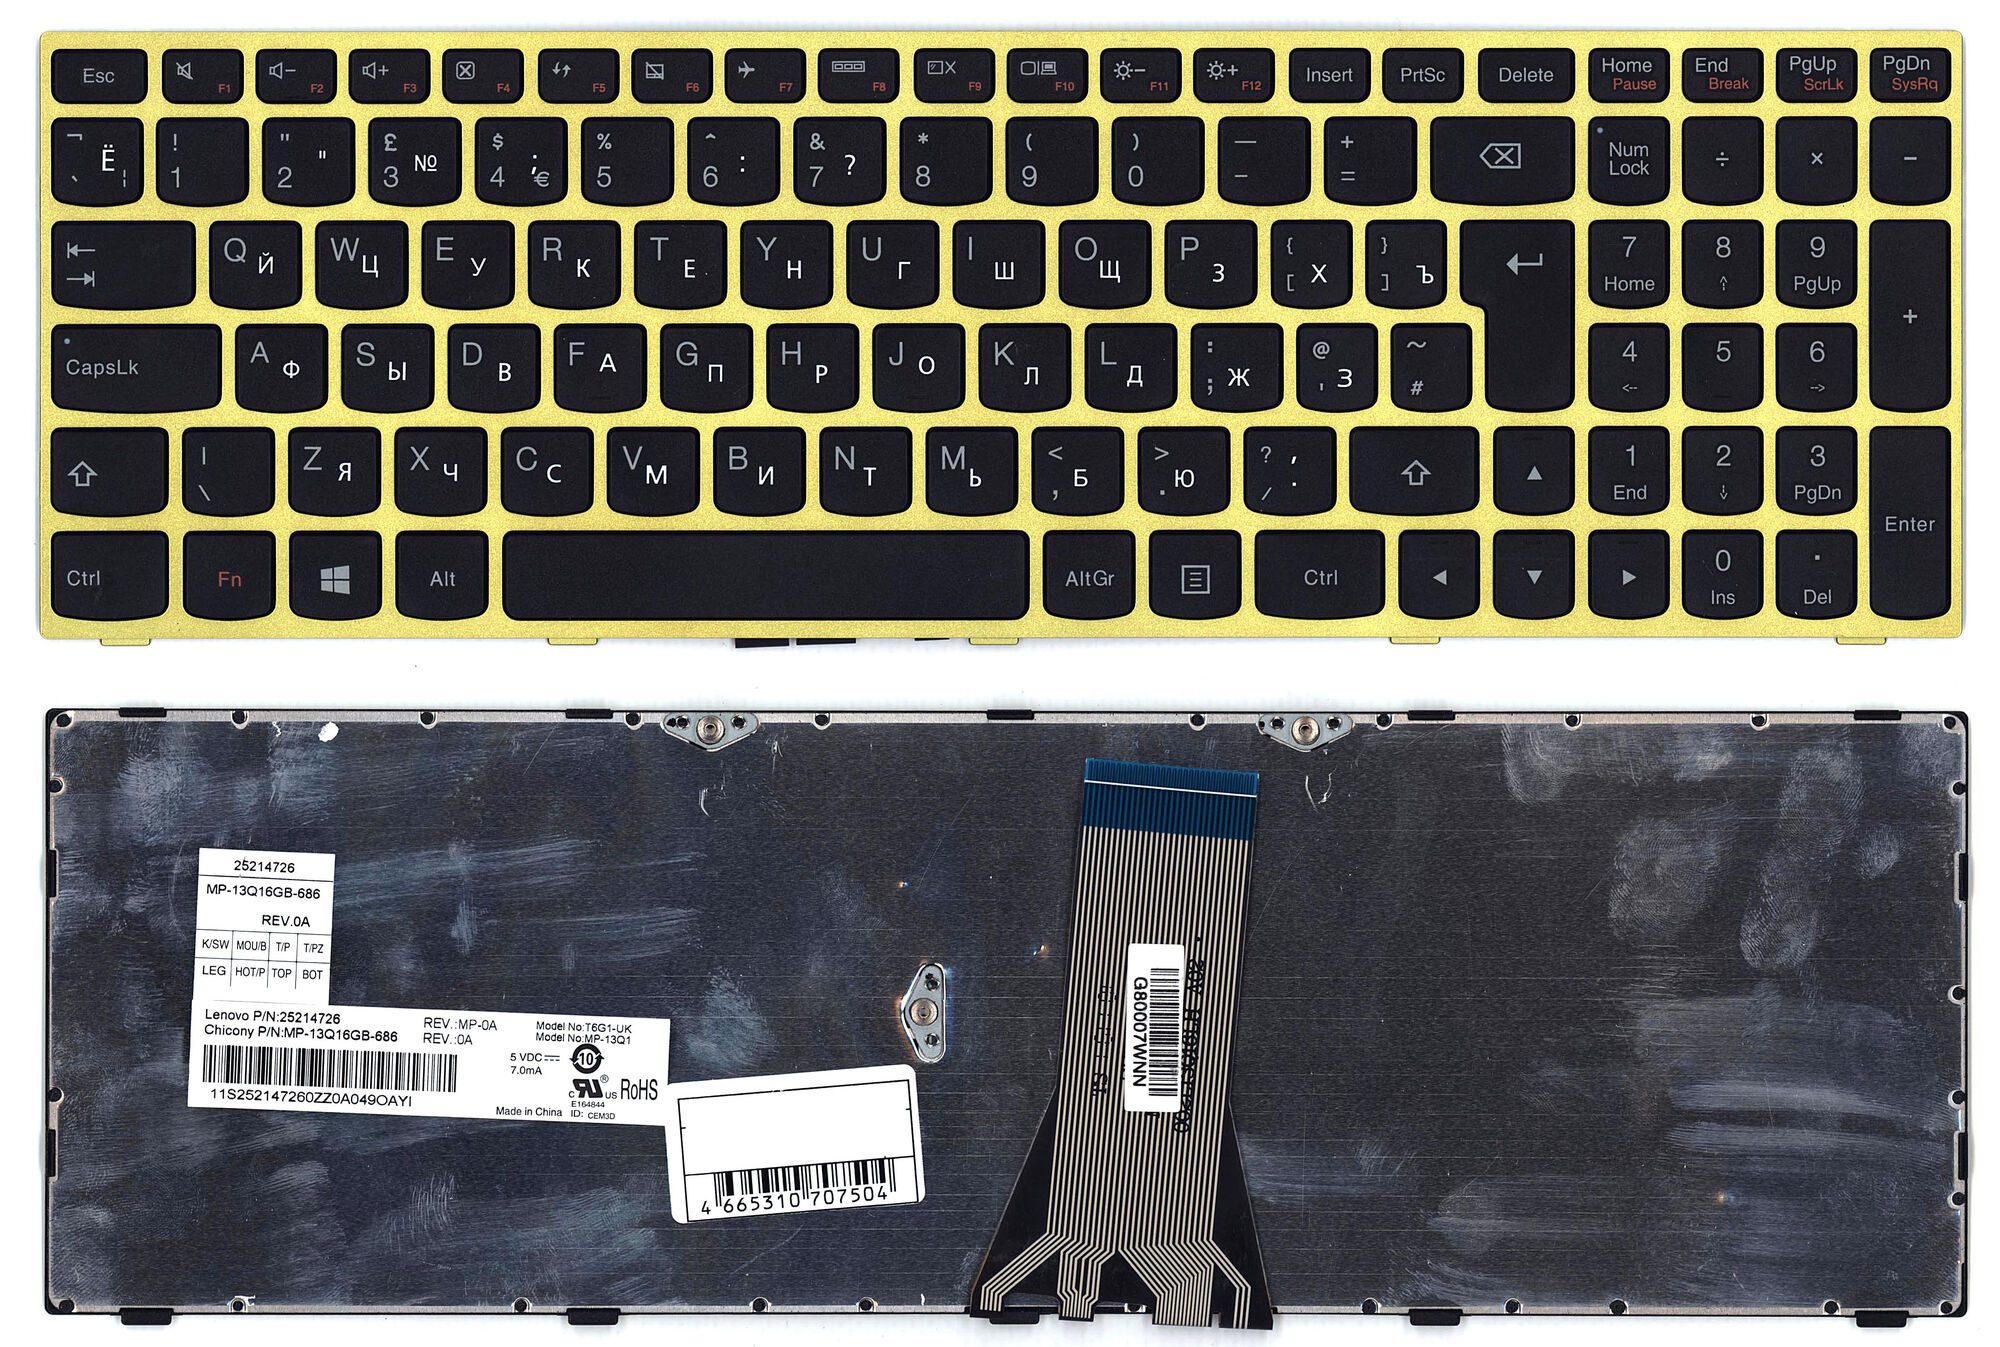 Клавиатура для ноутбука Lenovo G50-30 G50-70 Z50-70 с салатовой рамкой p/n: 25214725, MP-13Q13US-686